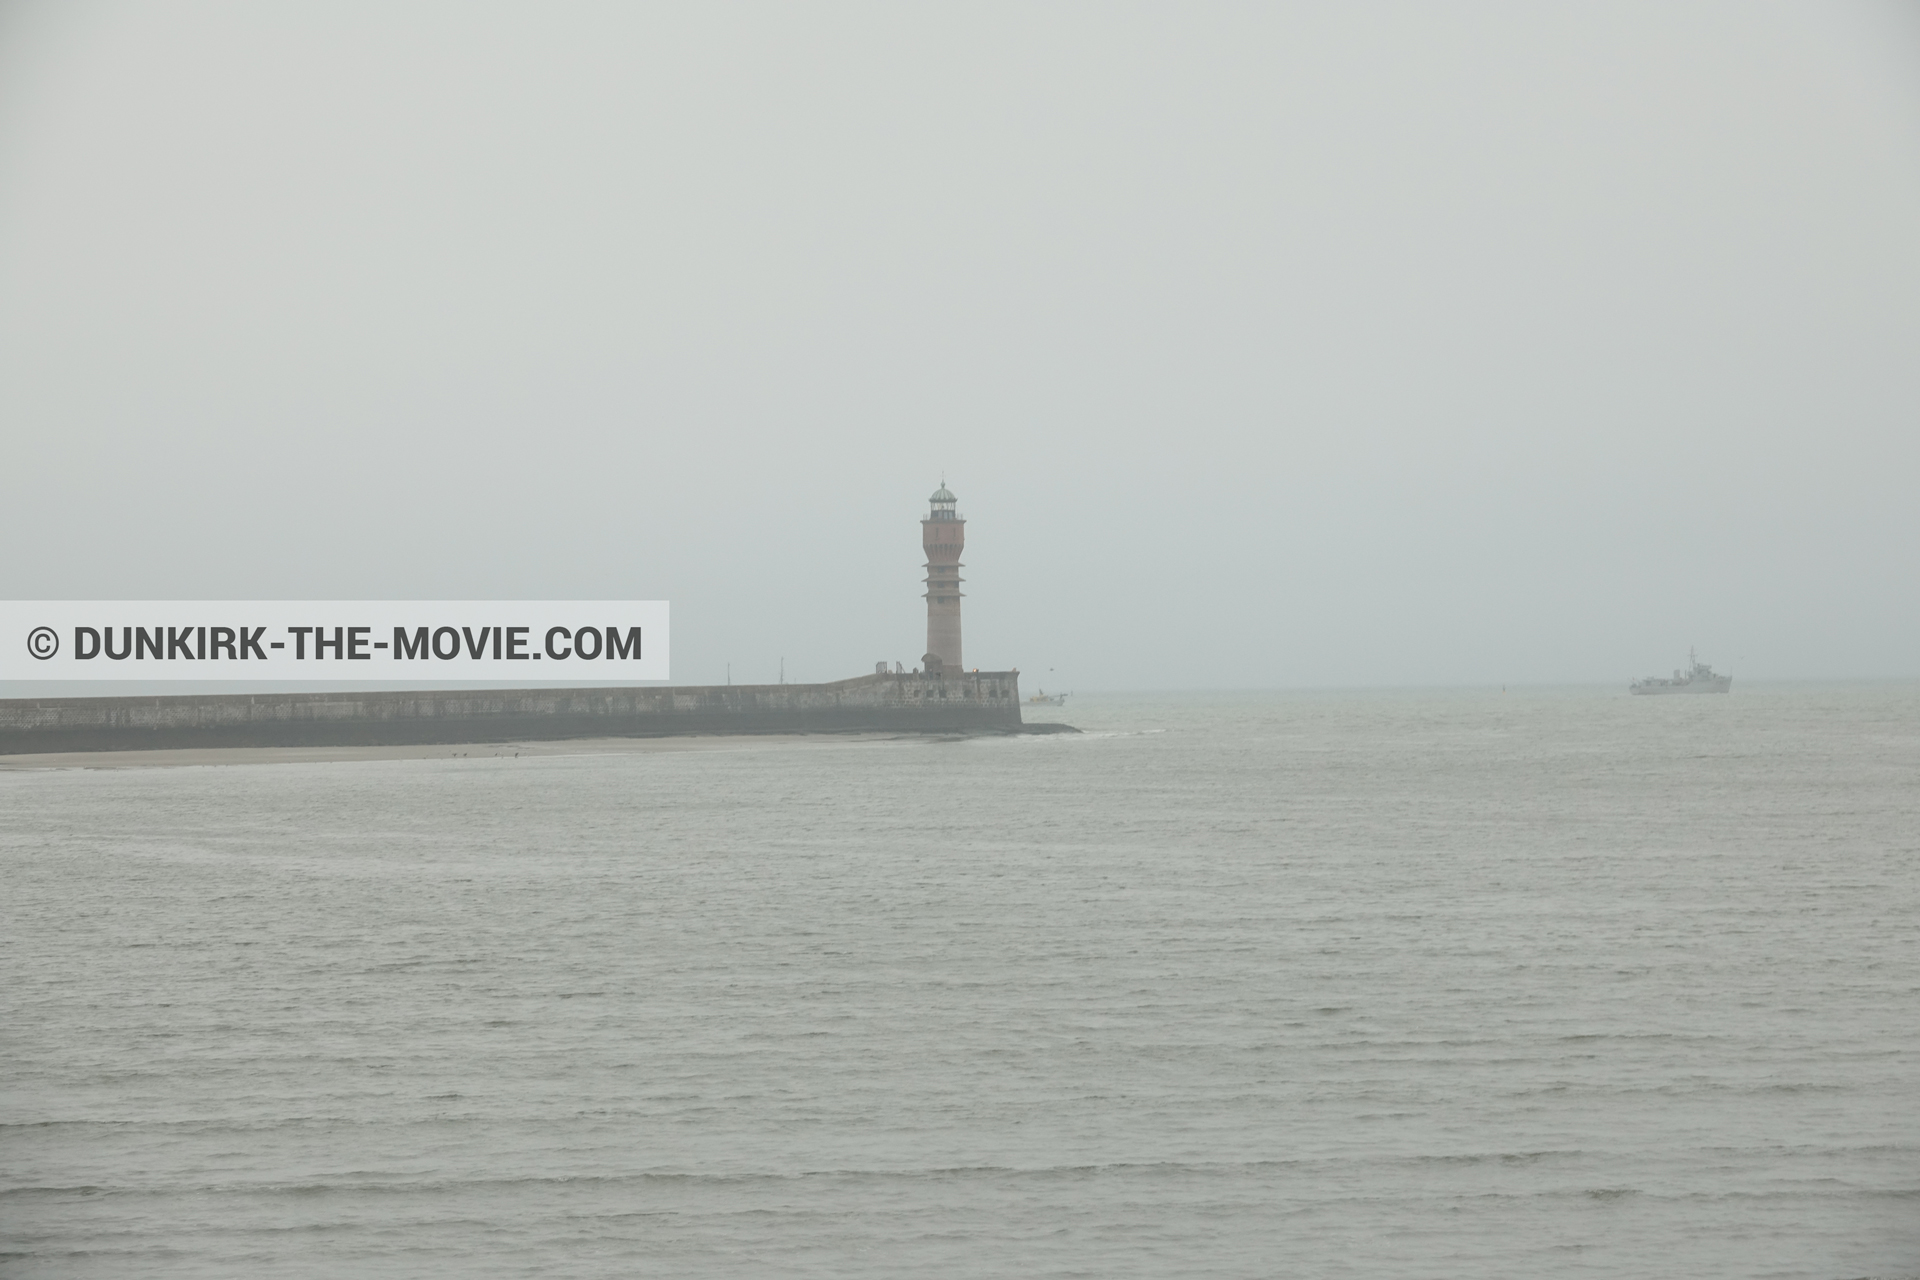 Fotos con barco, cielo gris, mares calma, faro de Saint-Pol-sur-Mer,  durante el rodaje de la película Dunkerque de Nolan